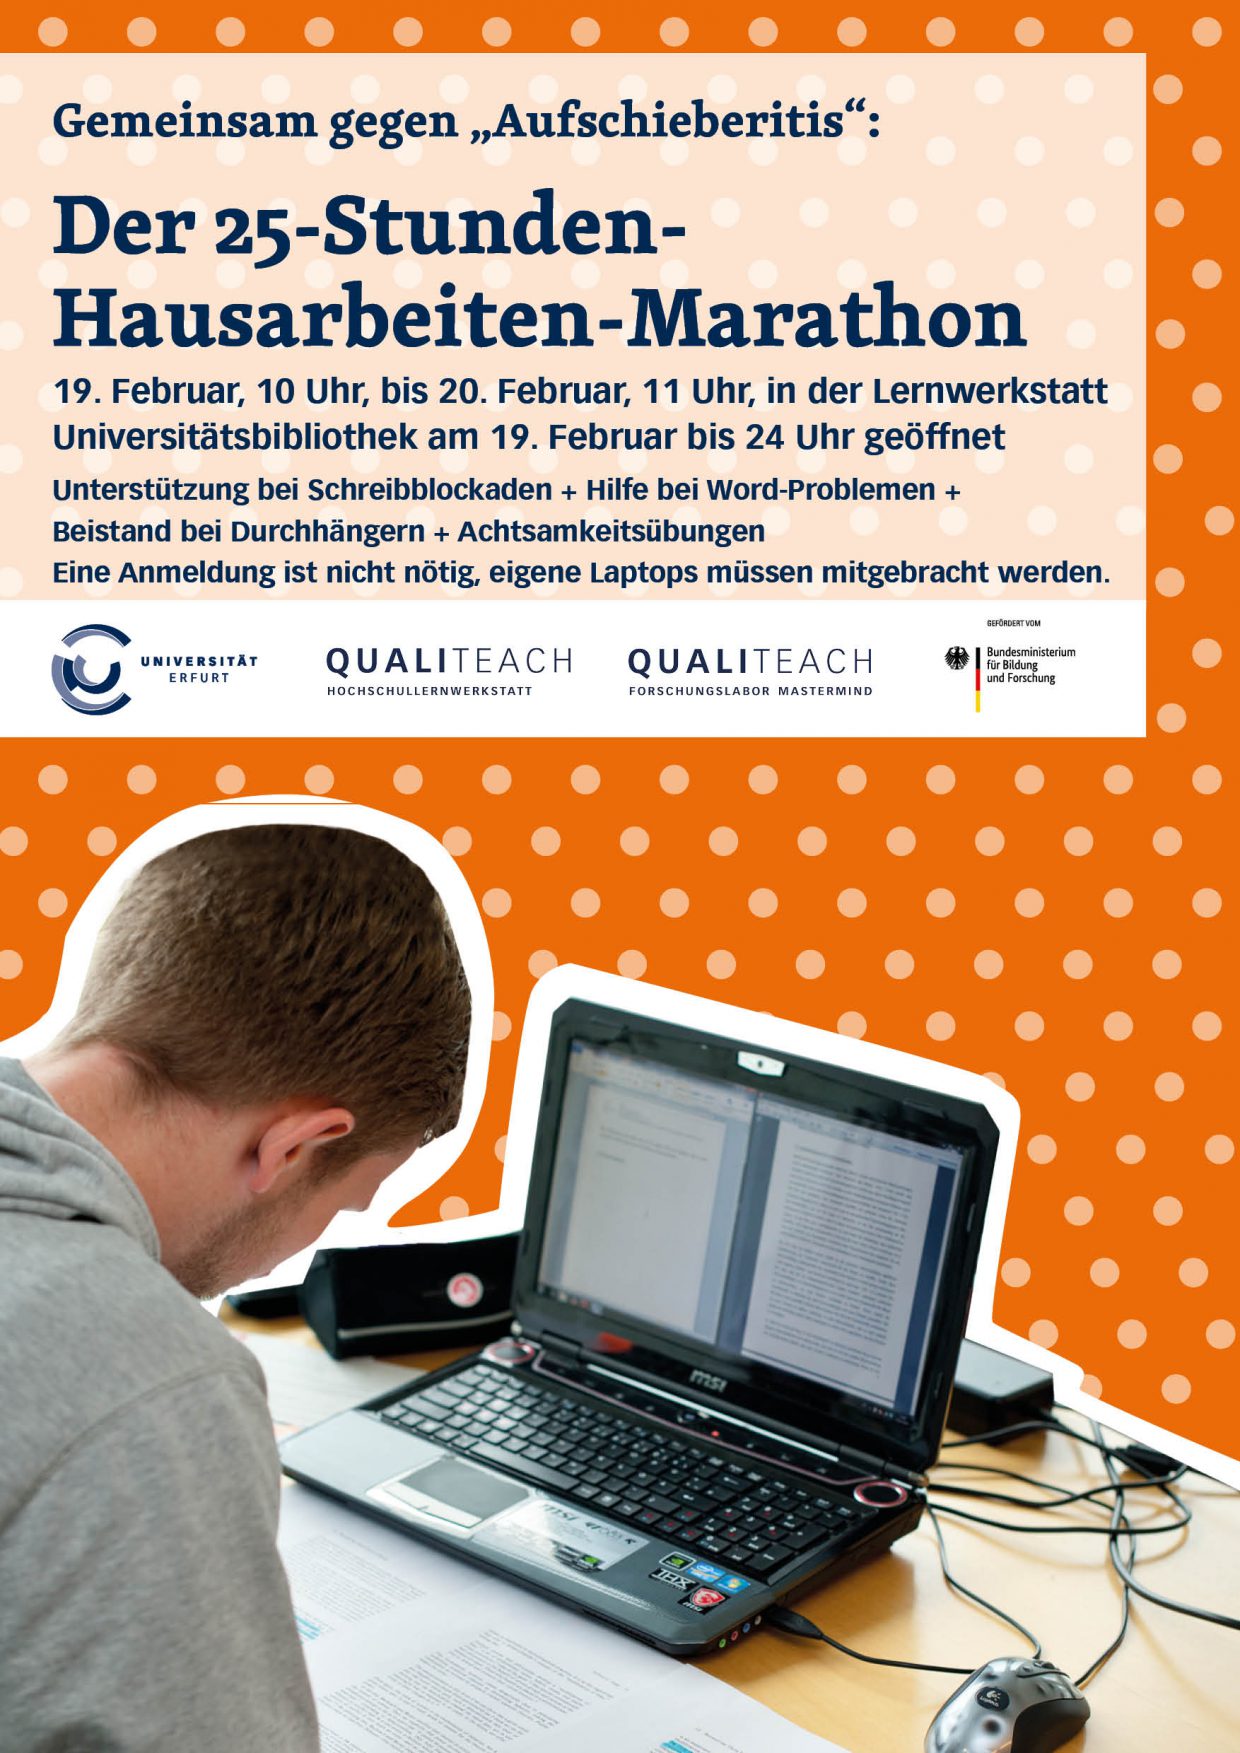 Plakat "Der 25-Stunden-Hausarbeiten-Marathon Februar 2019", Student sitzt vor einem Laptop, orangener Hintergrund